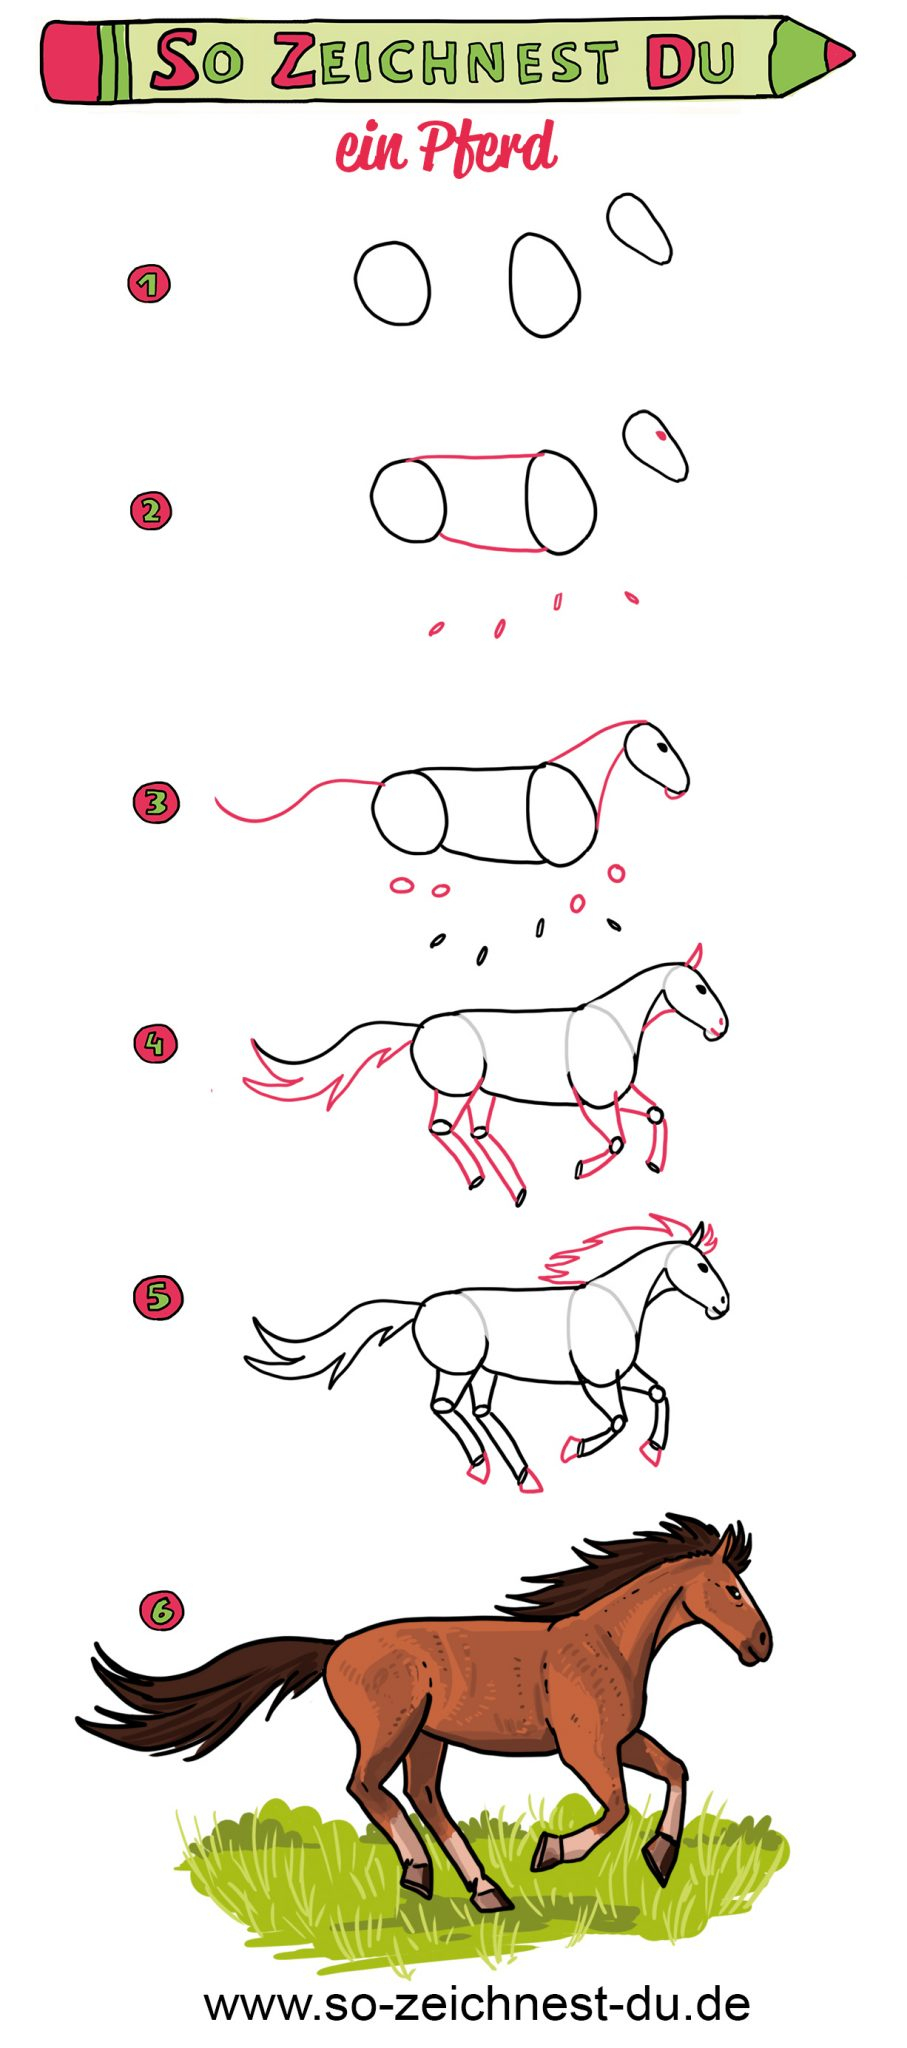 So Zeichnest Du Ein Pferd - Ganz Einfach Zeichnen Lernen mit Pferd Malen Anleitung